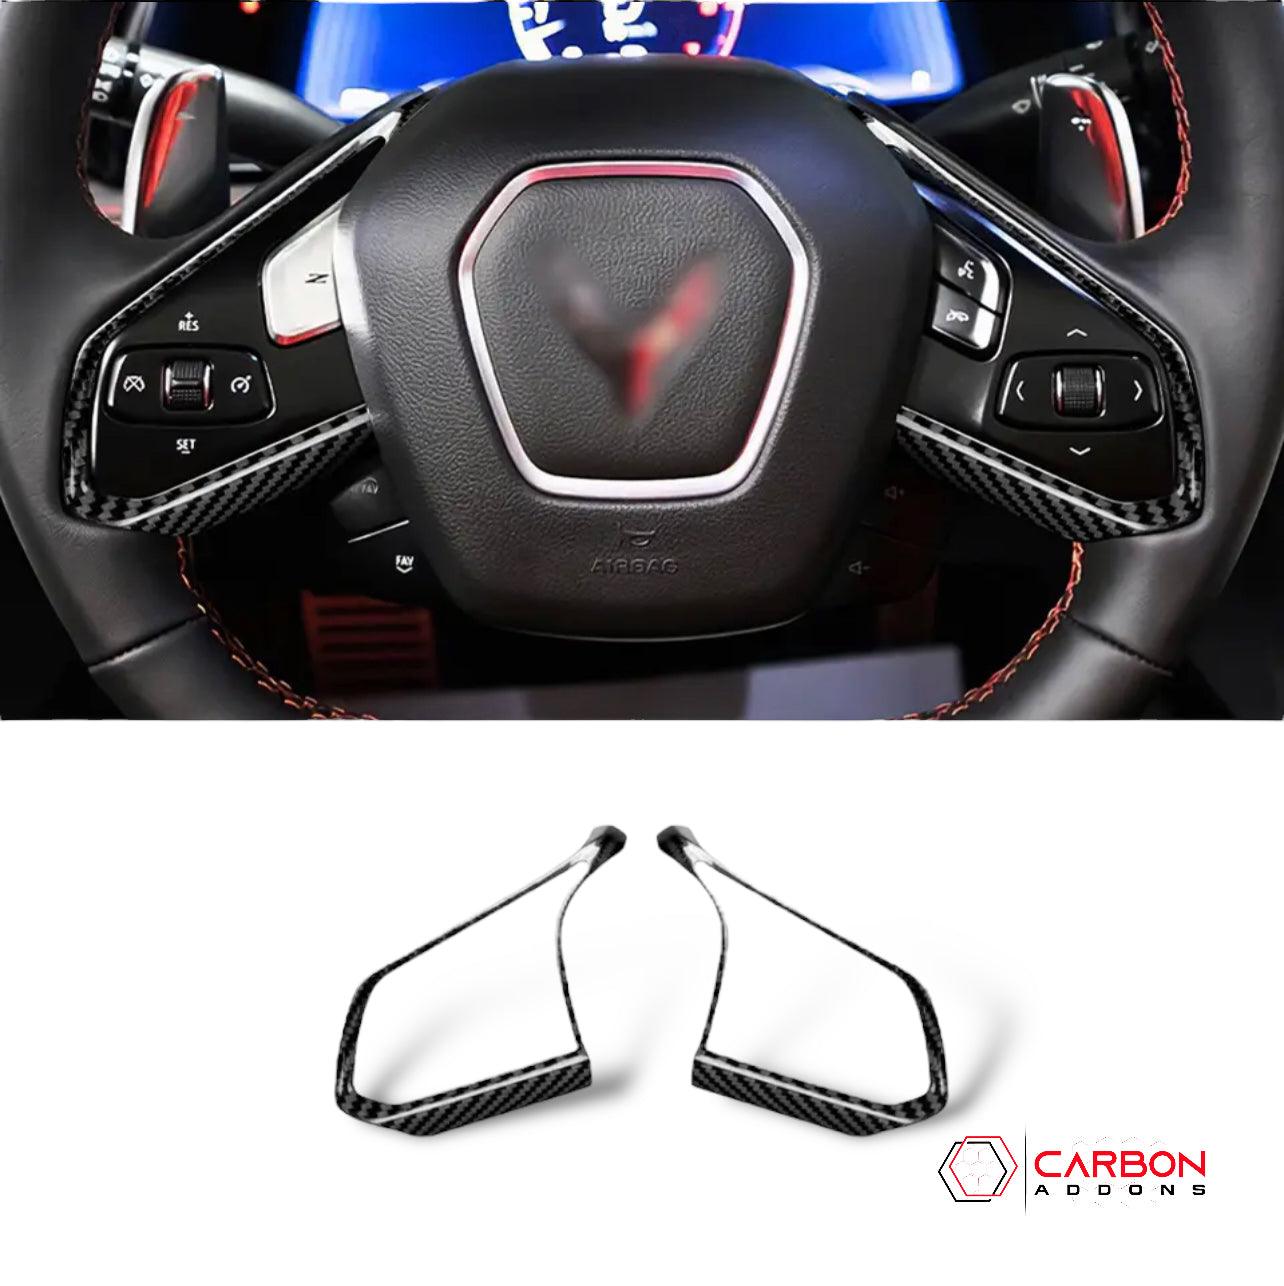 [2pcs] C8 Corvette Carbon Fiber Steering Chrome Trim Delete Covers - carbonaddons Carbon Fiber Parts, Accessories, Upgrades, Mods